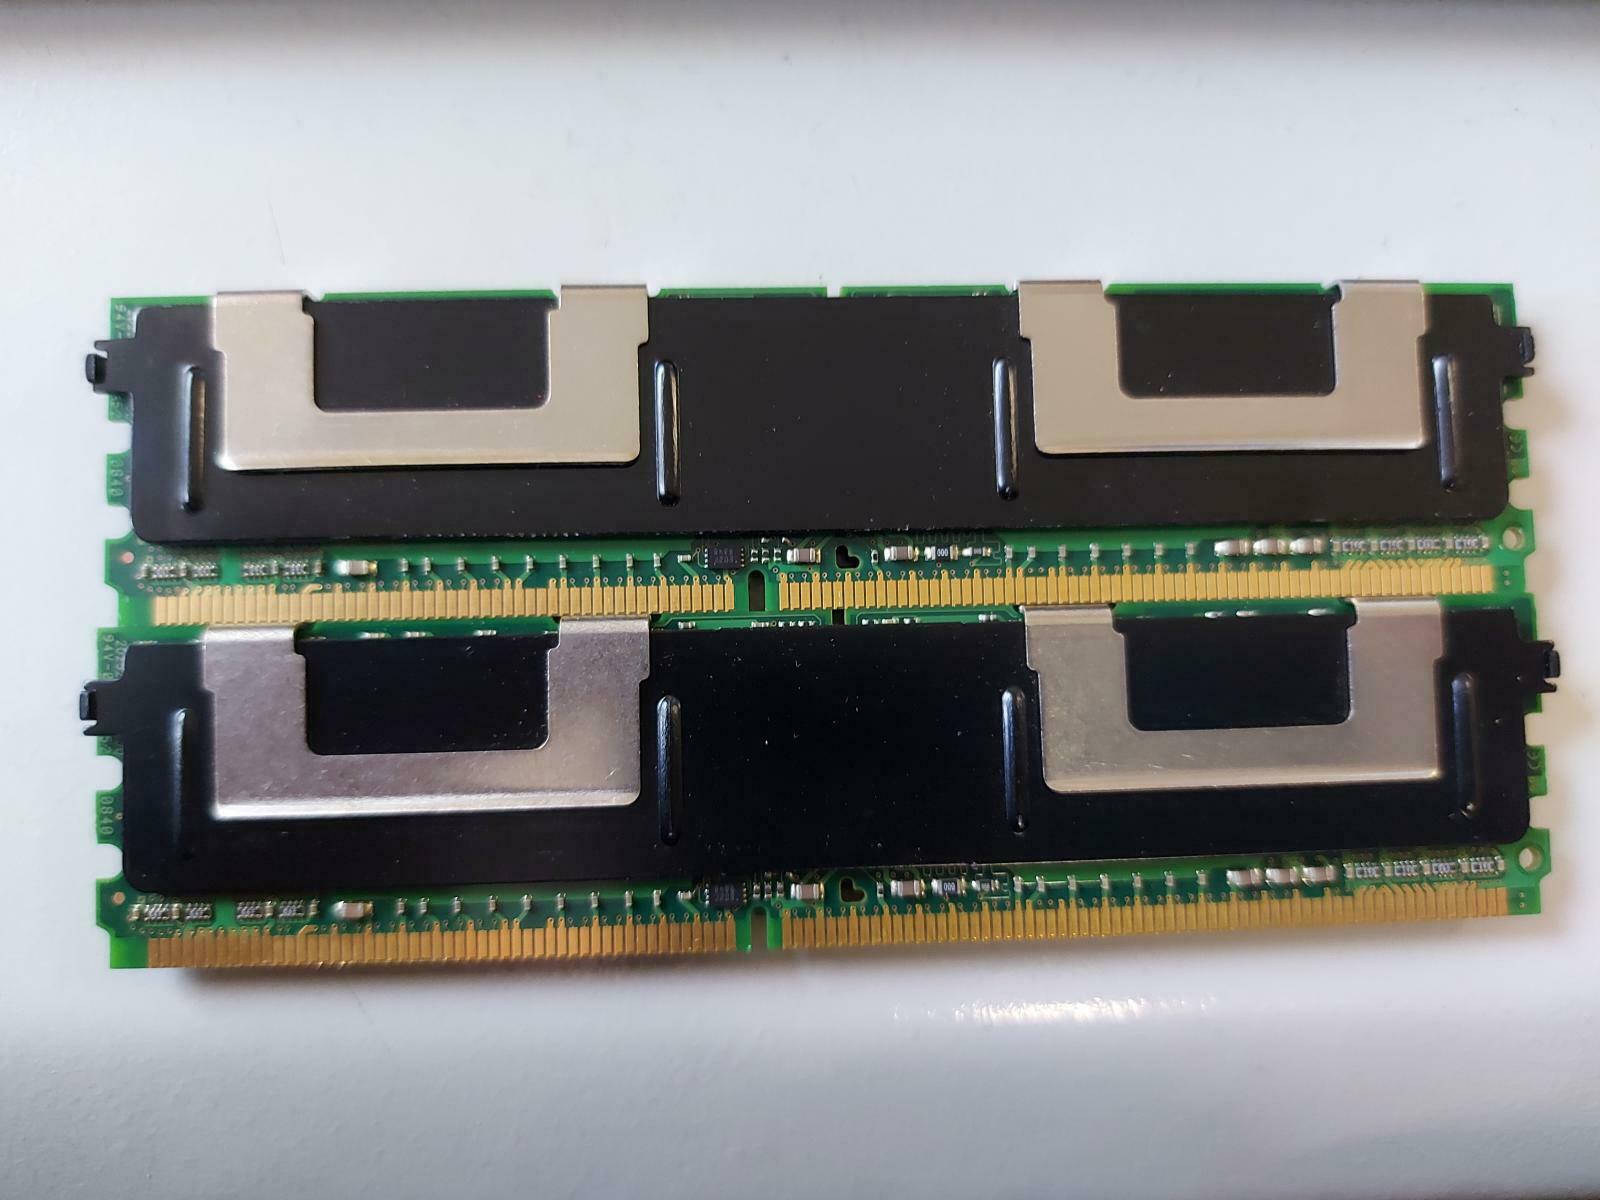 Kingston 2GB Kit (2 X 1GB) PC2-4200 DDR2 CL4 240P DIMM KTD-WS533/2G 9965286-091